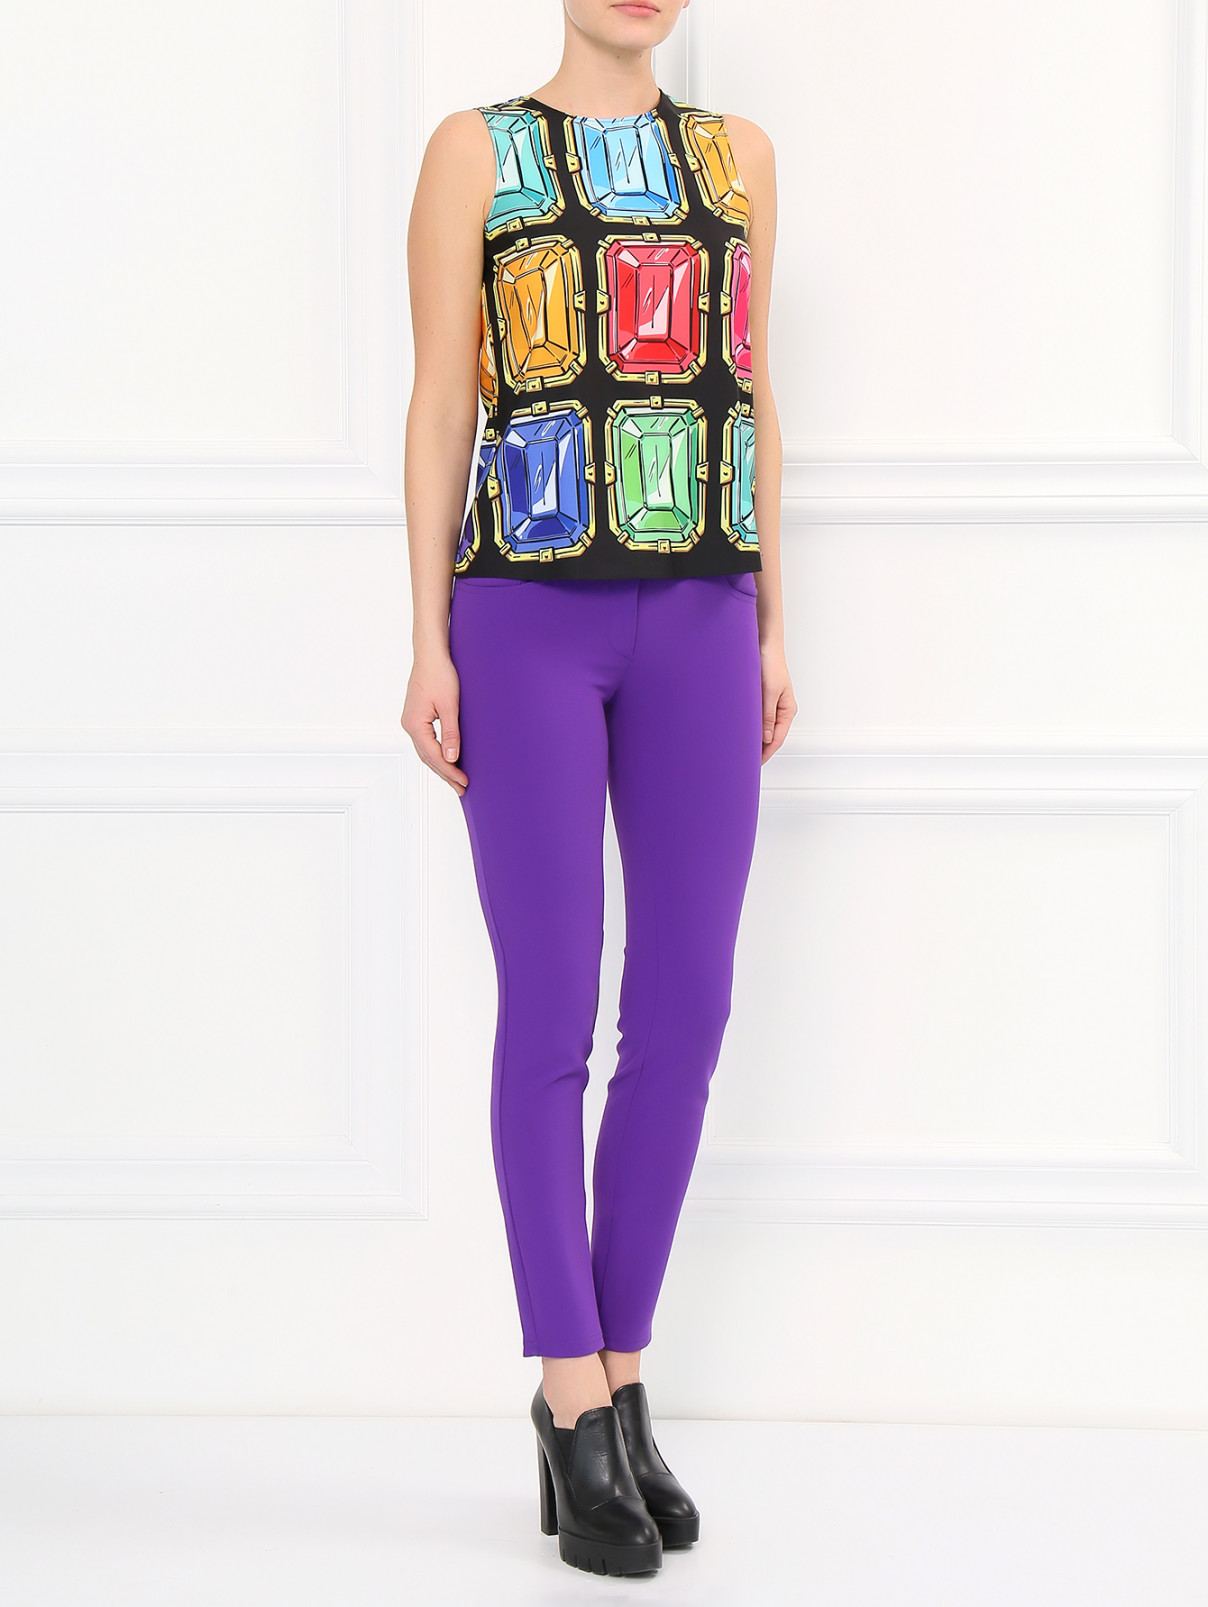 Узкие брюки с молниями во внутренних швах Moschino Boutique  –  Модель Общий вид  – Цвет:  Фиолетовый